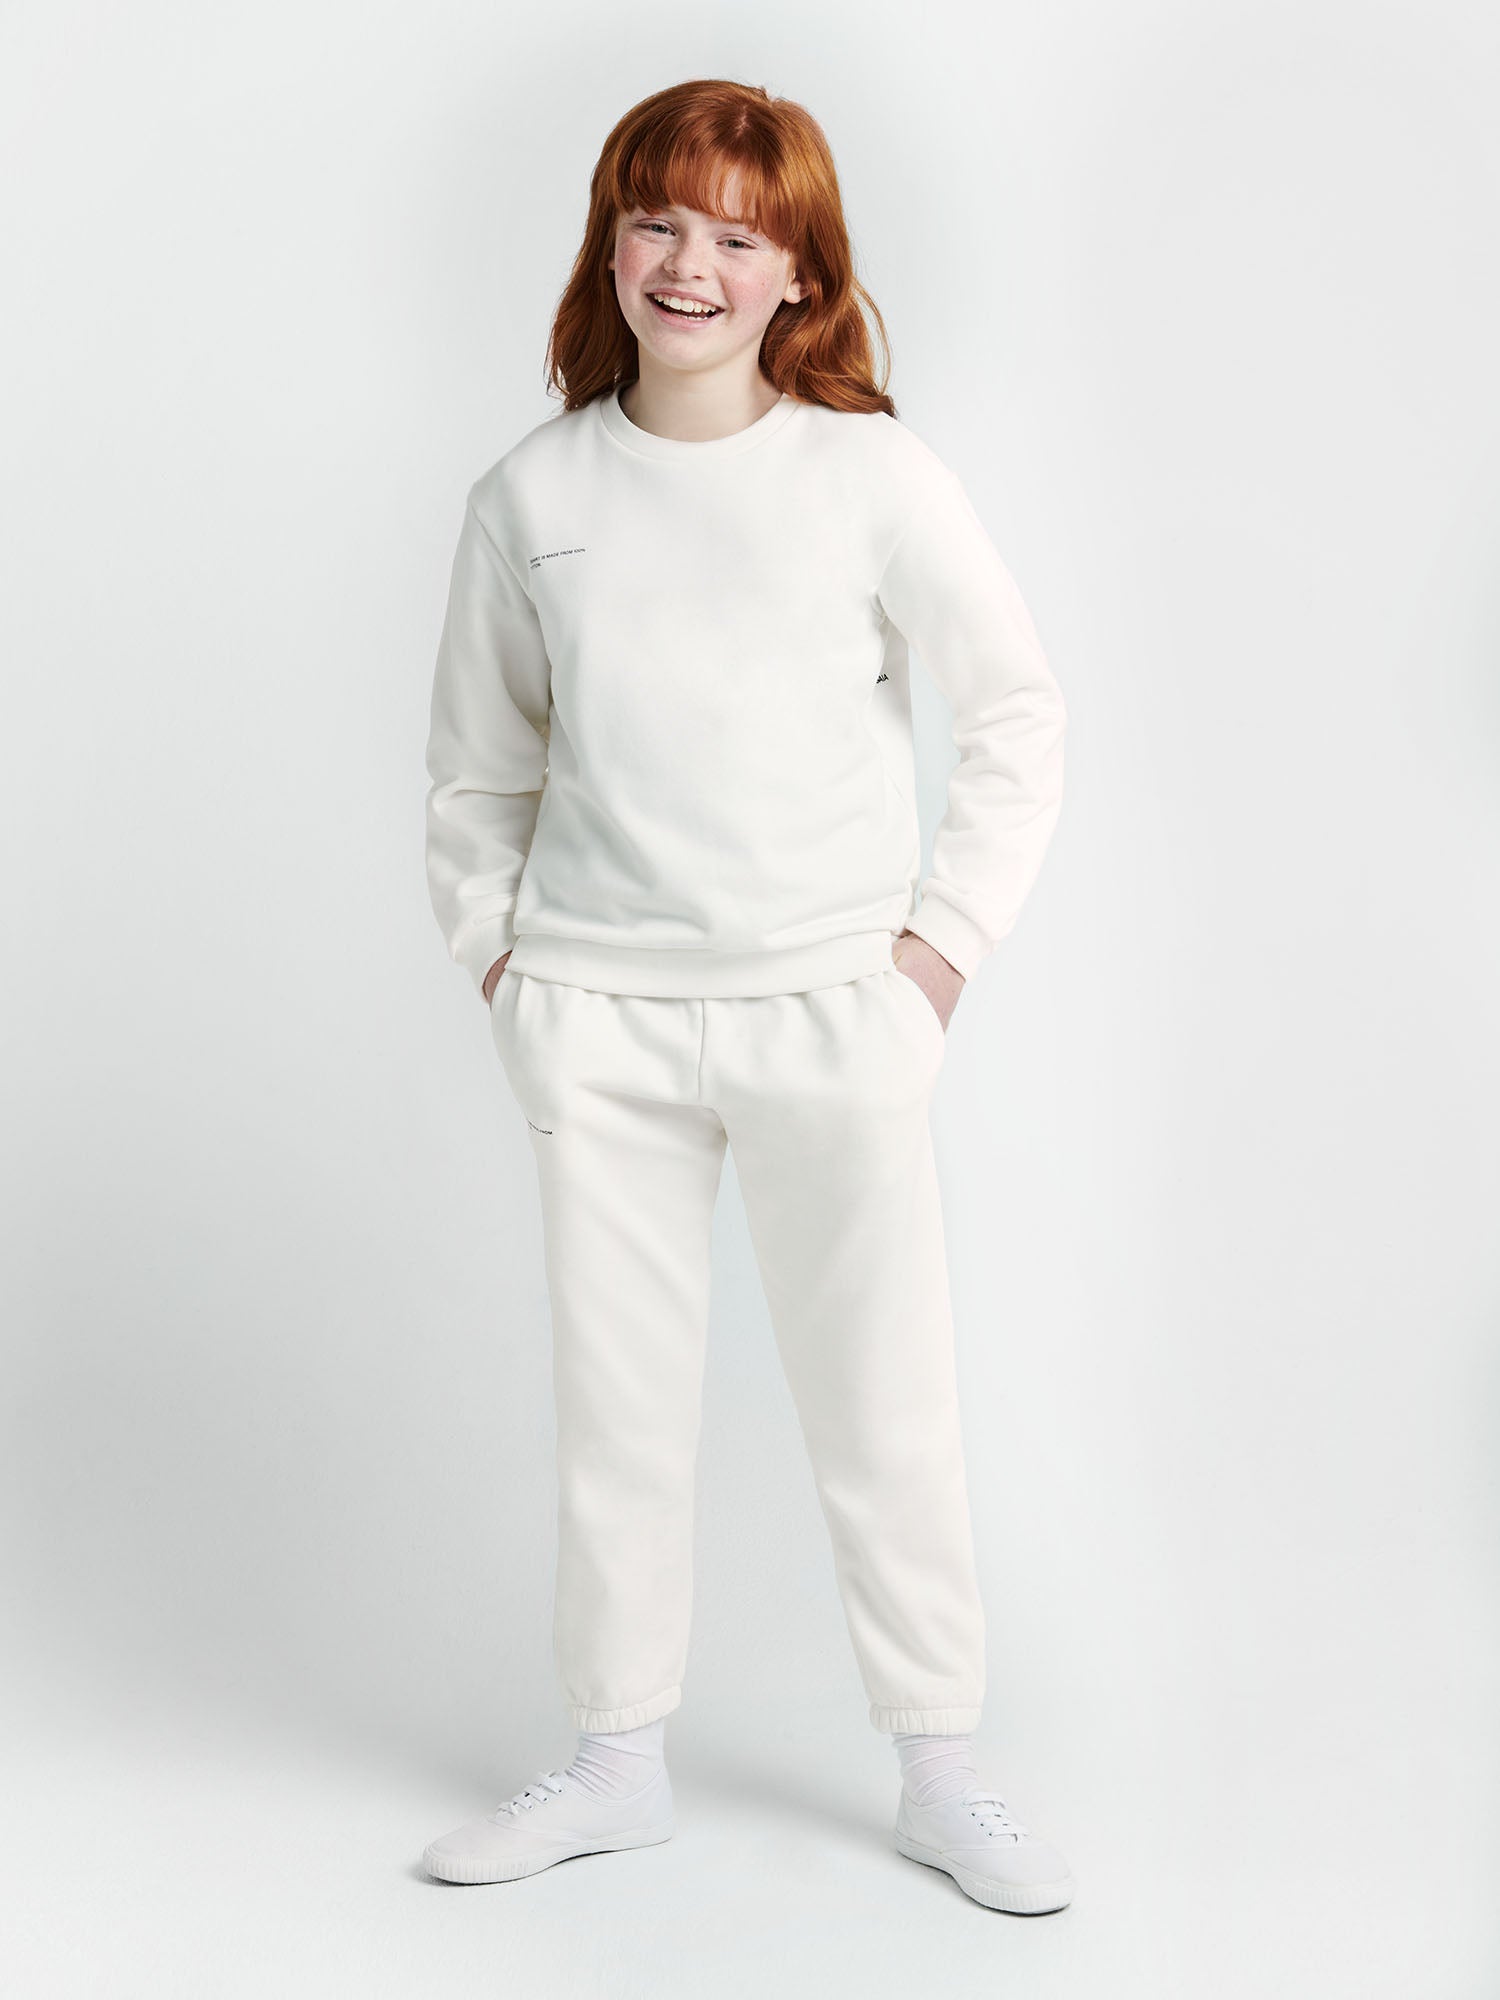 Diesel Kids logo-print cotton track pants - White